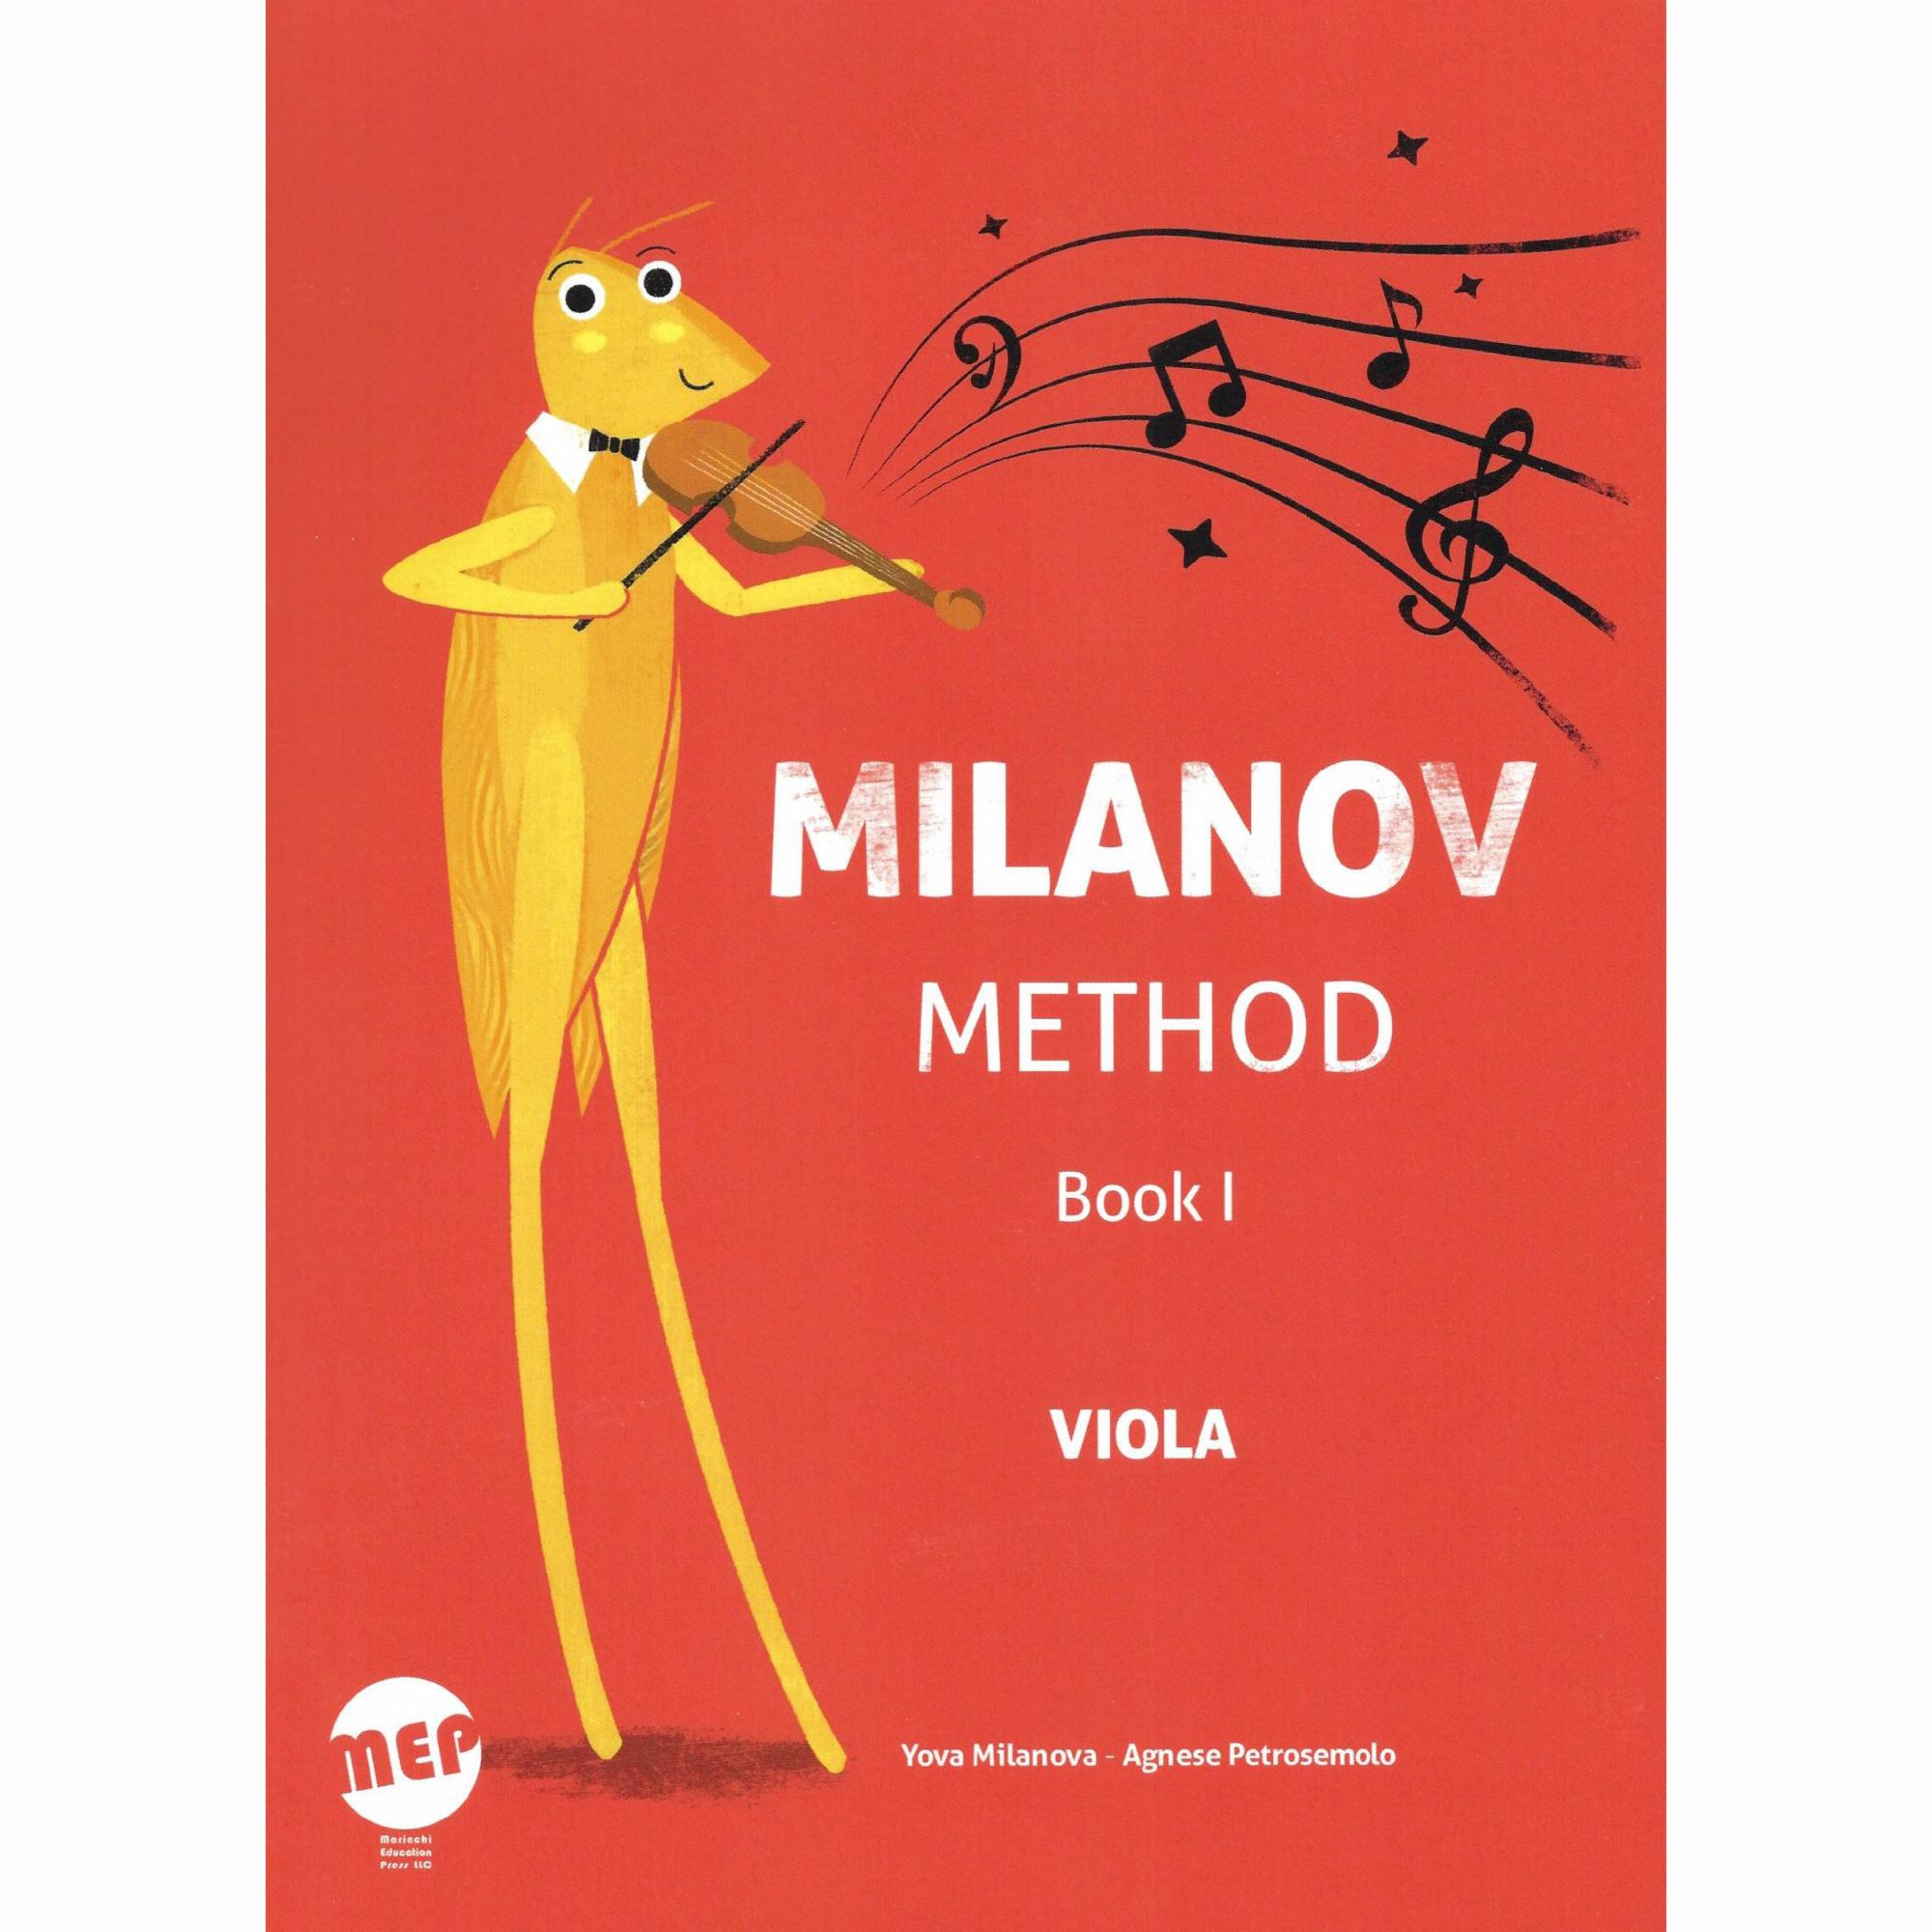 Milanov Method for Viola